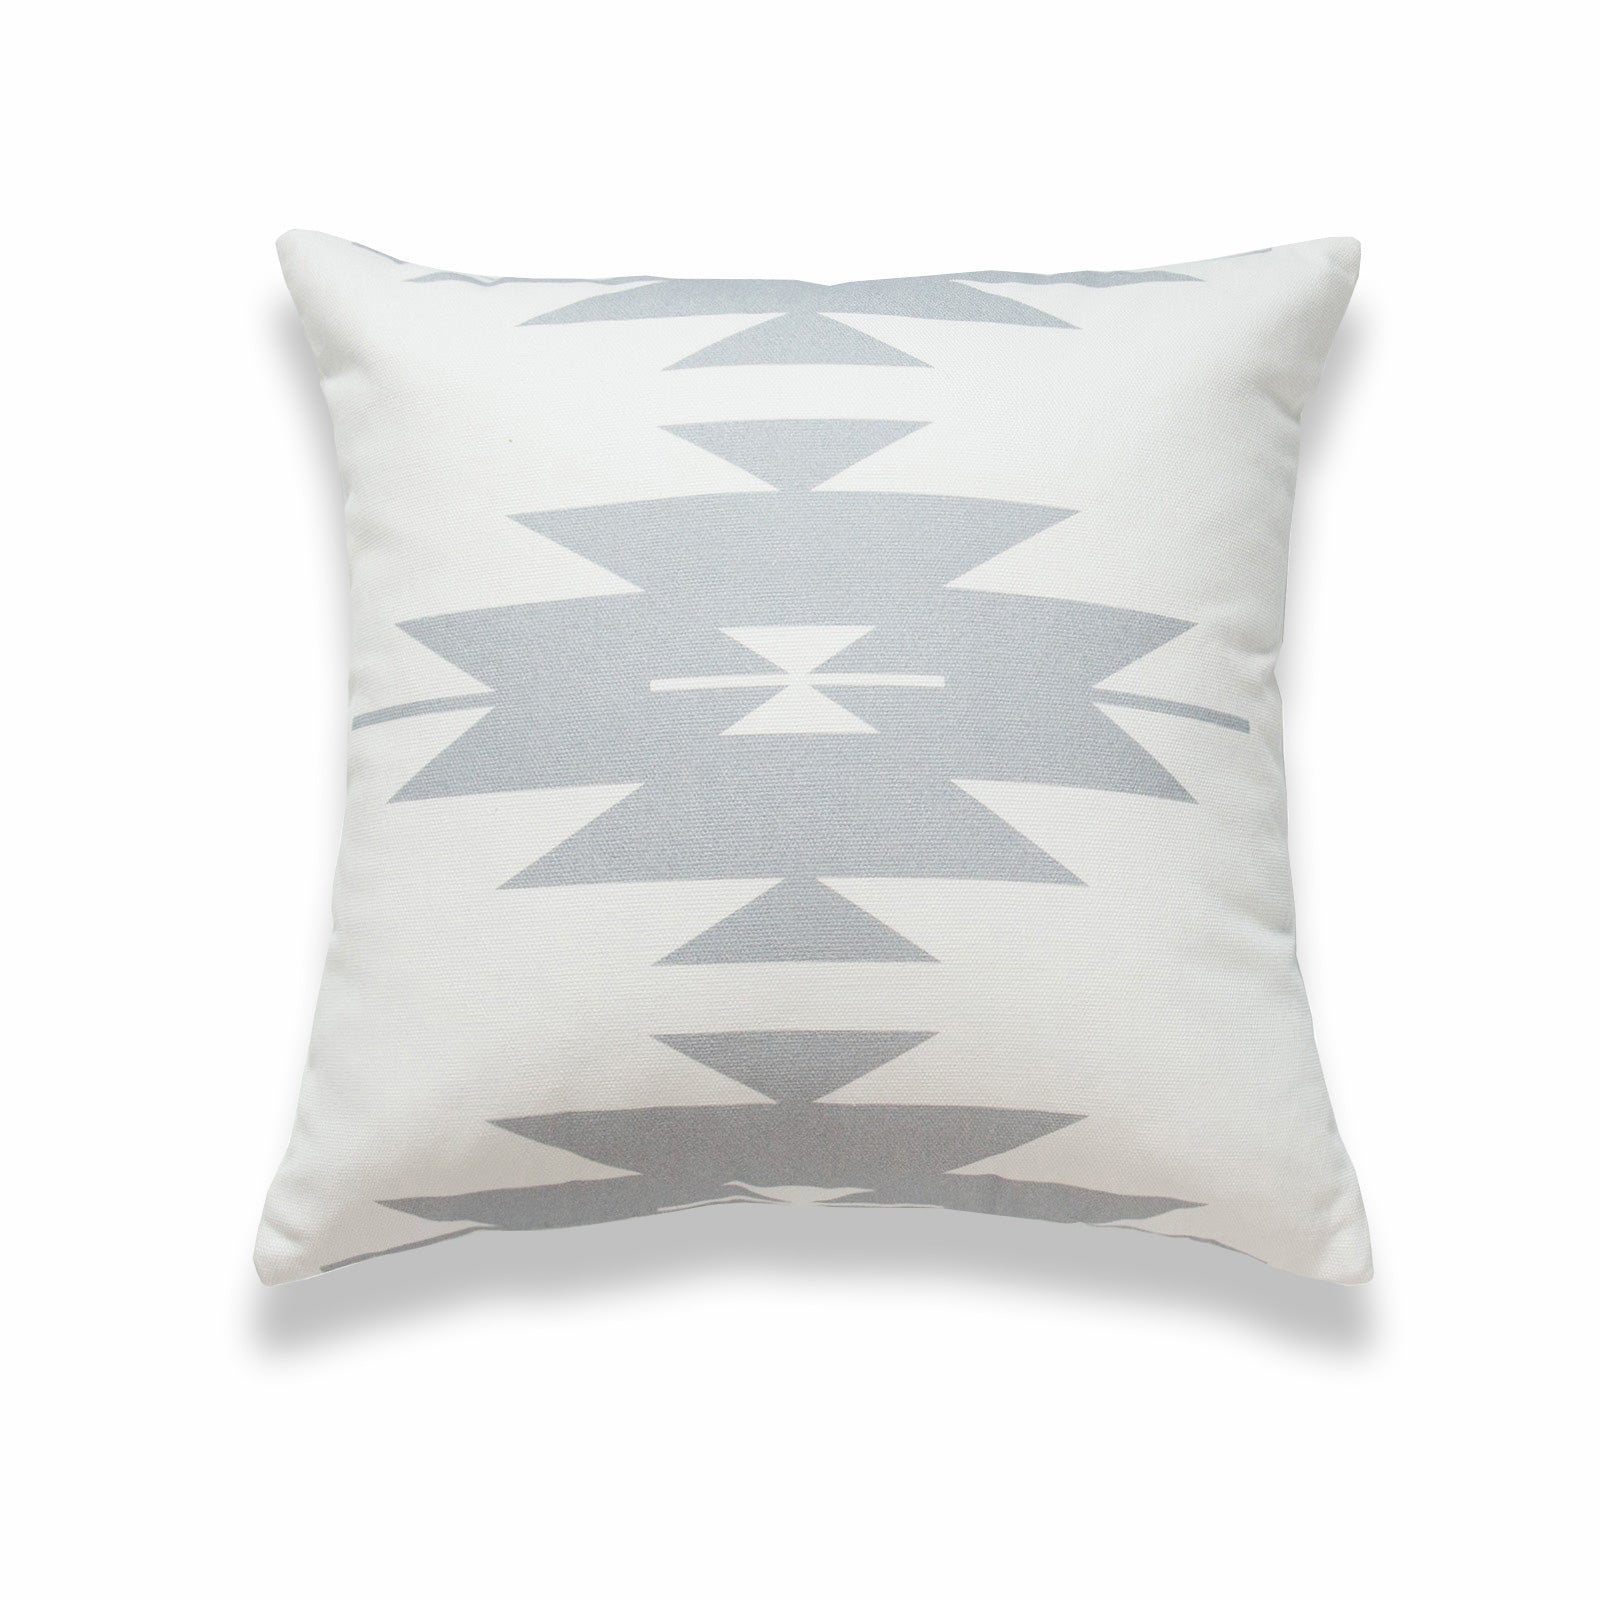 Aztec Print Pillow Cover, Diamond, Gray White, 18"x18"